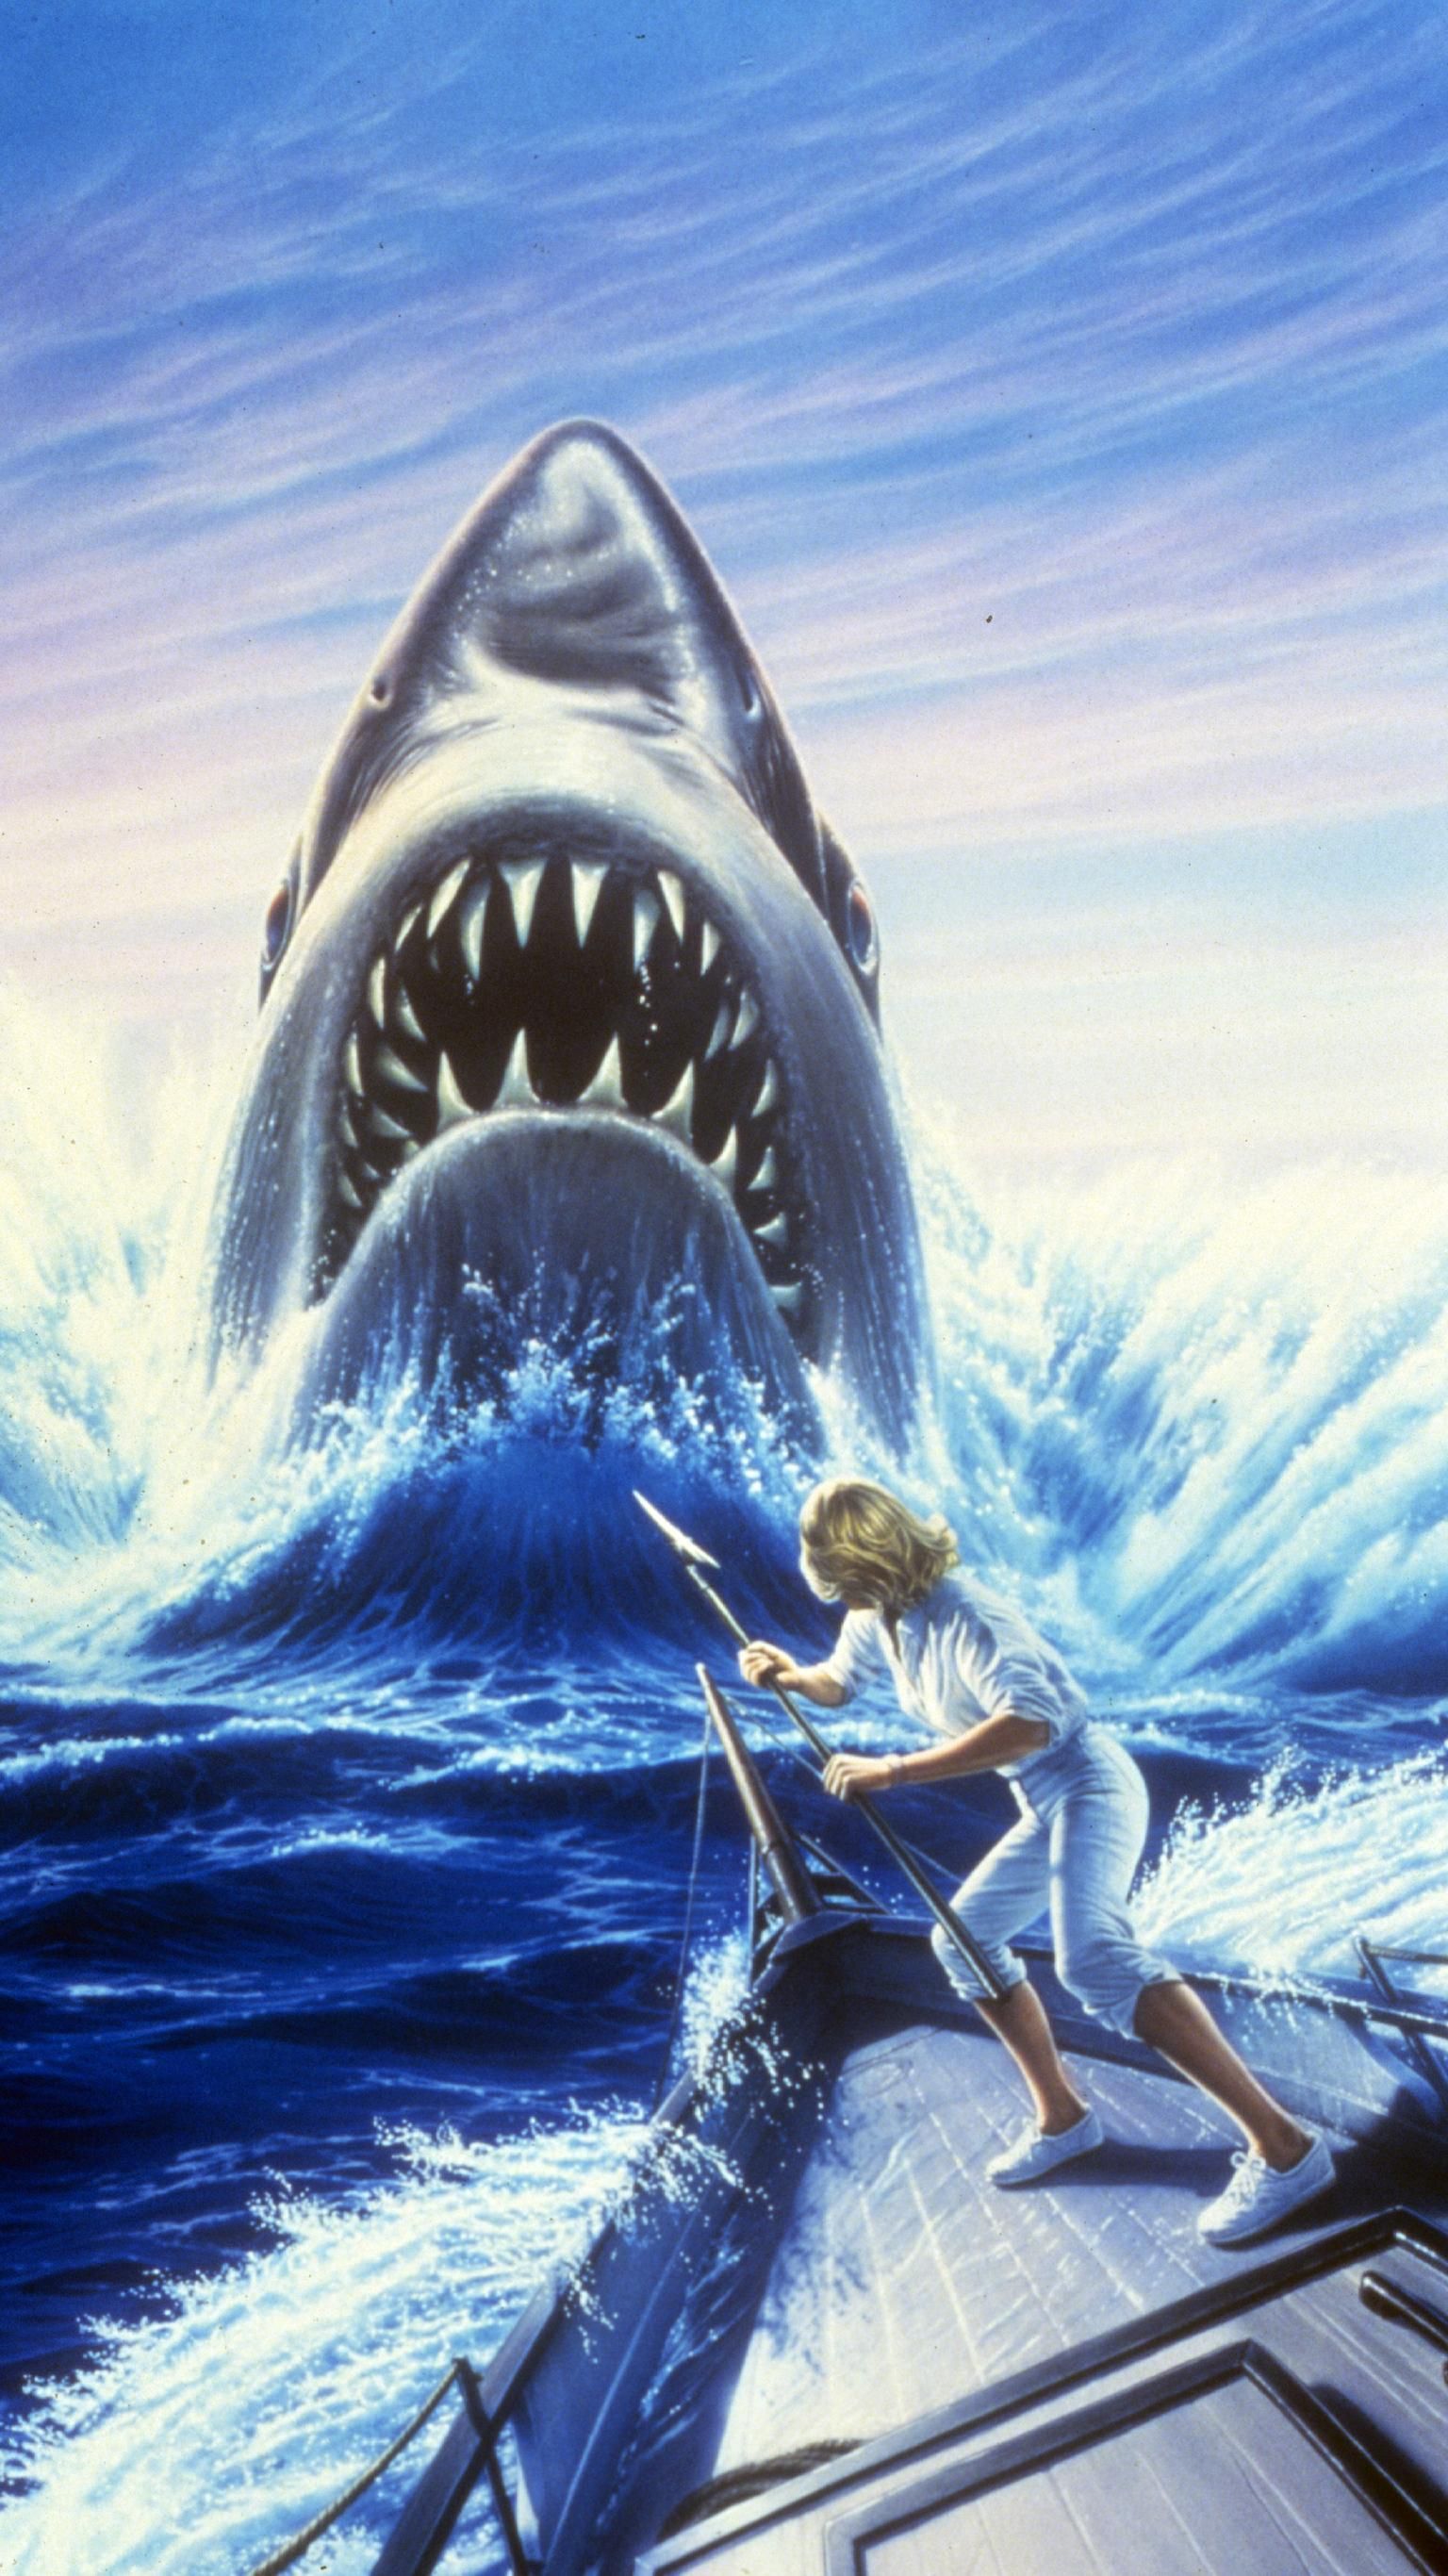 Jaws: The Revenge (1987) Phone Wallpaper. Moviemania. Shark, Jaws movie, Kodak moment